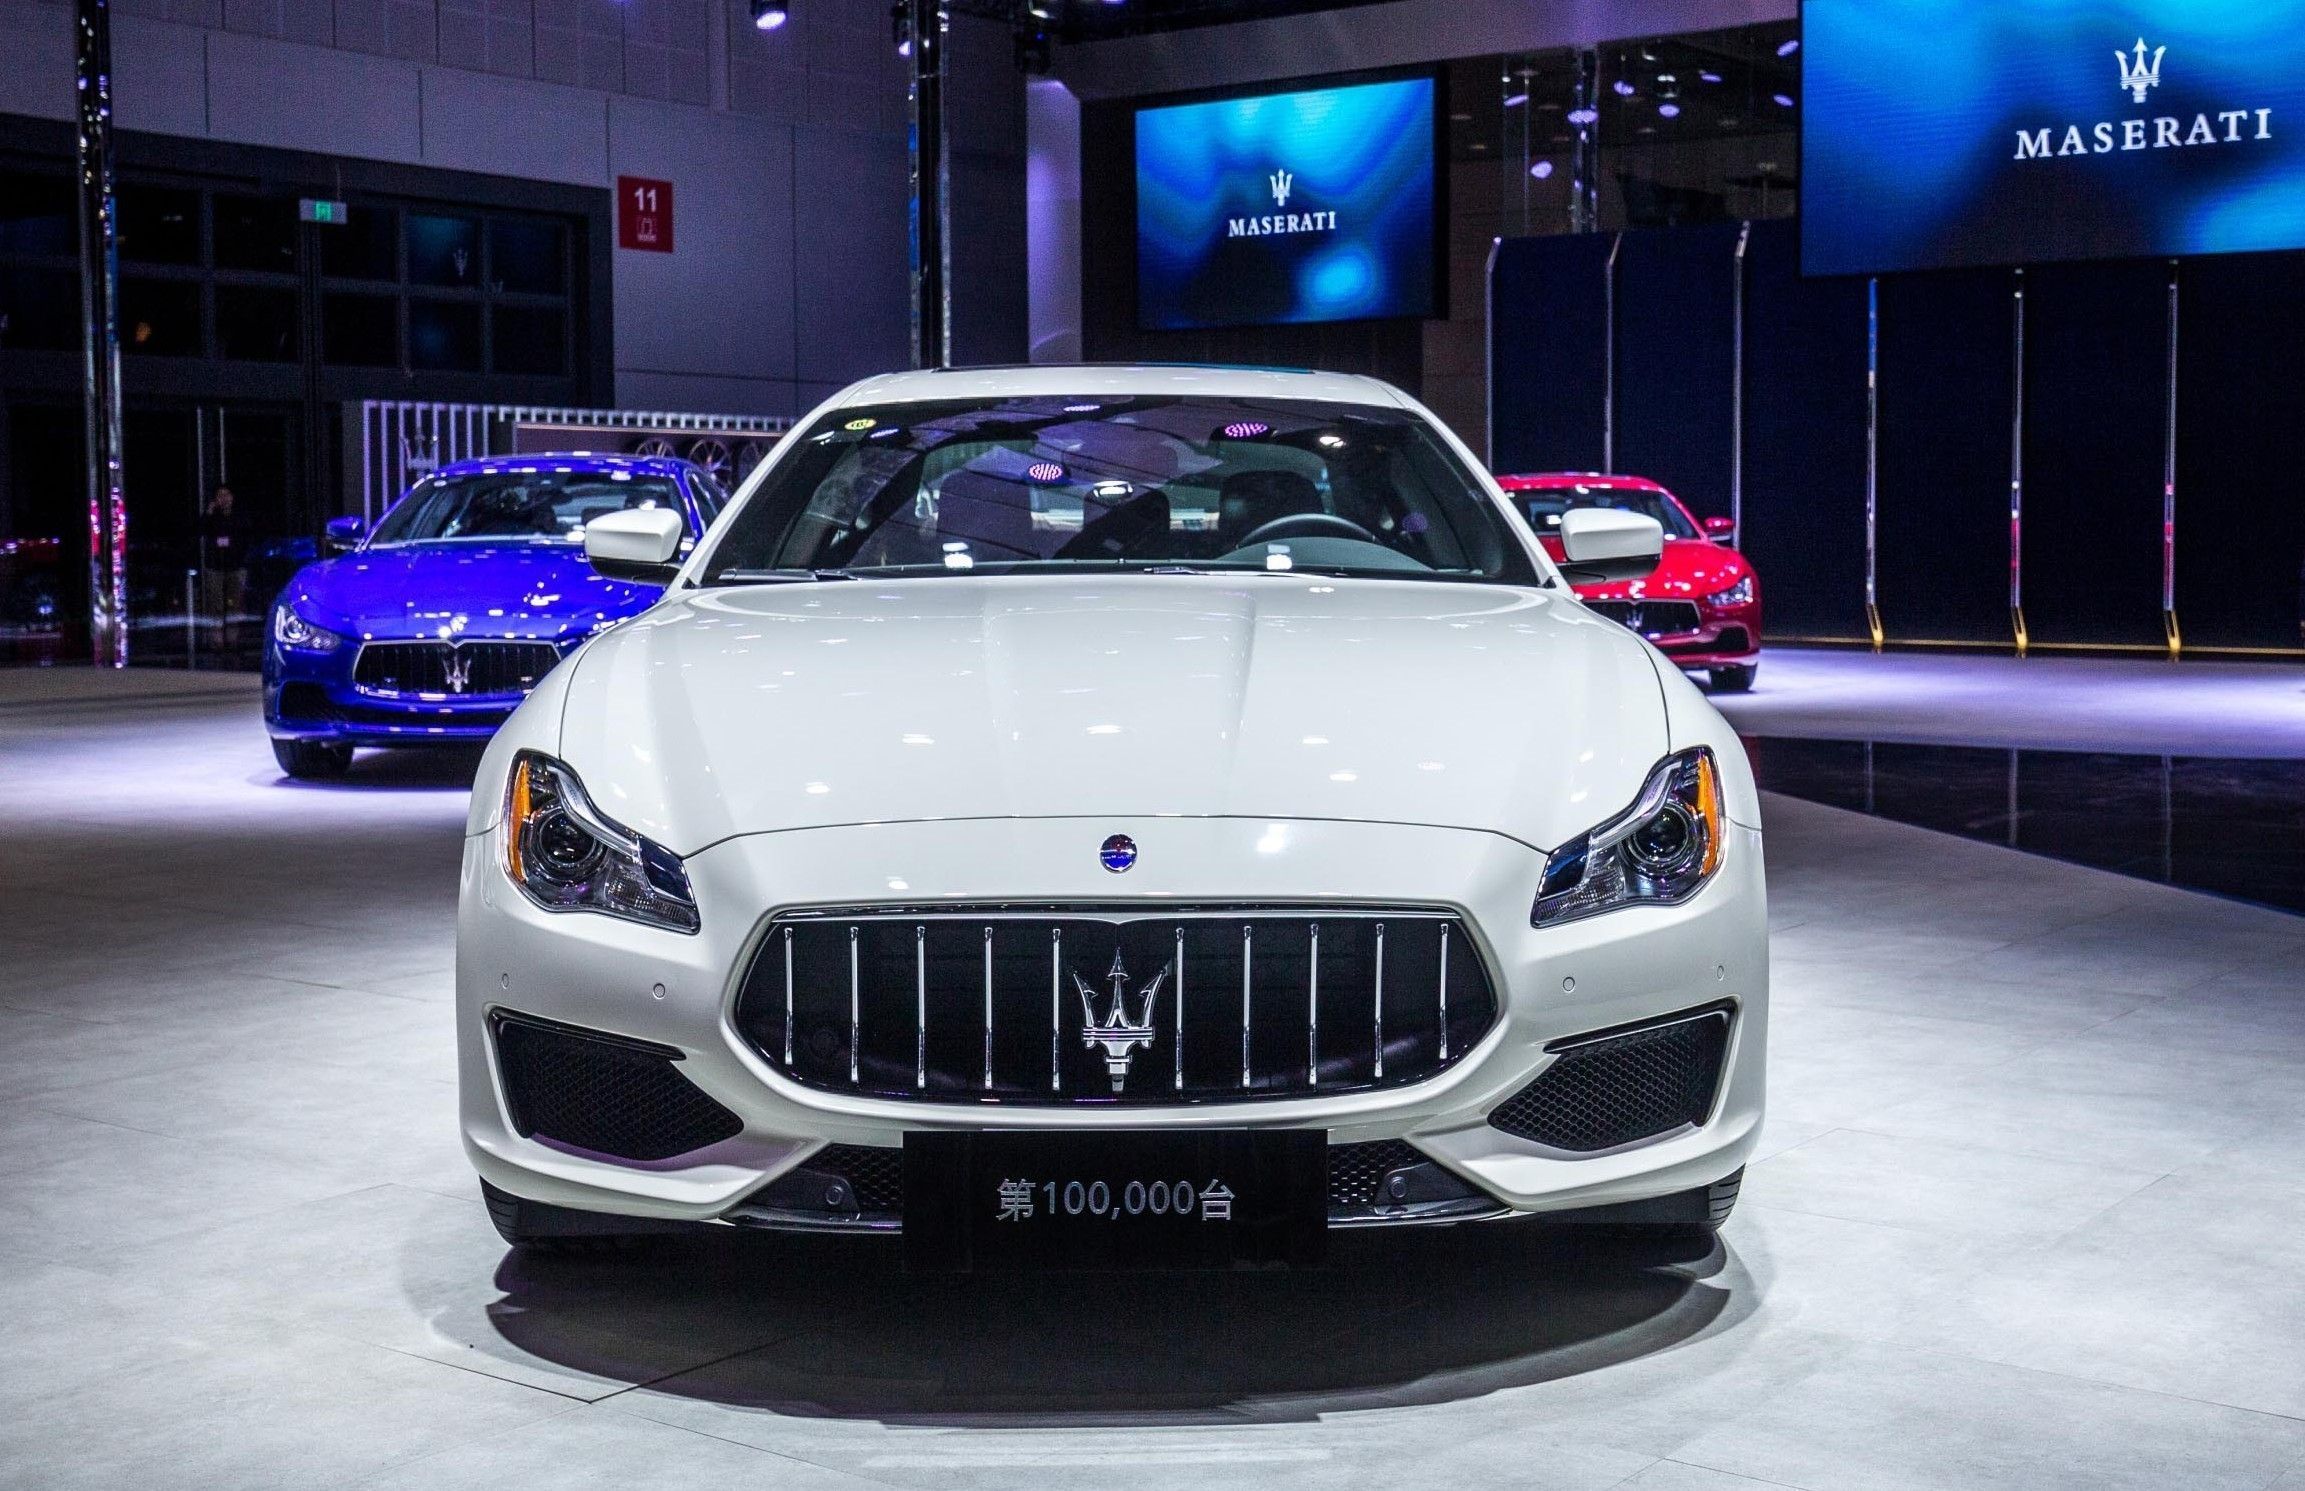 Maserati Celebrates Delivery Of 100,000 Cars Worldwide